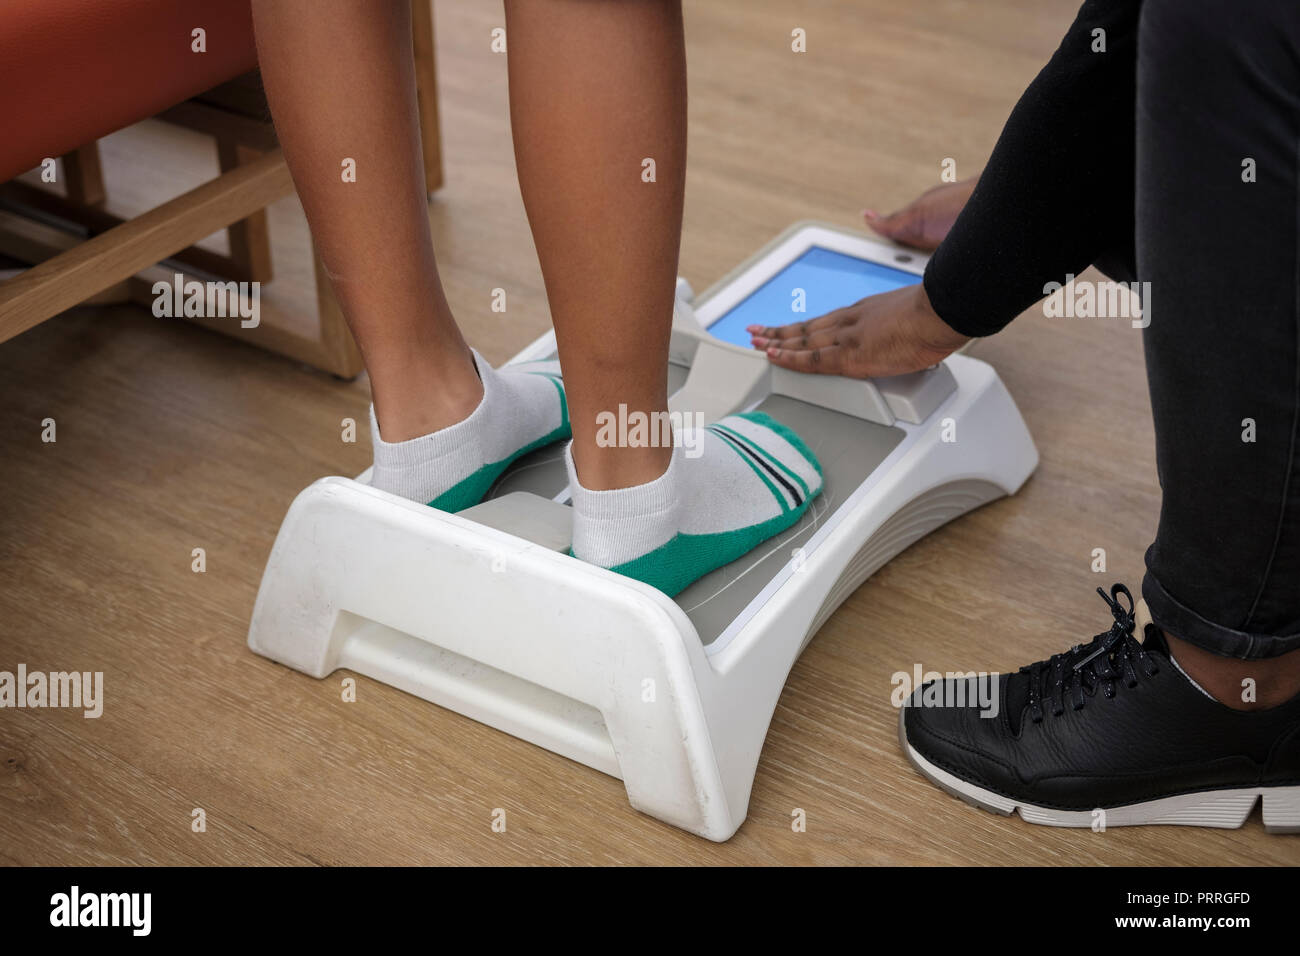 Garçon a ses pieds mesurée avec Brannock électronique pour déterminer la  taille de chaussure dans un magasin de chaussures Photo Stock - Alamy